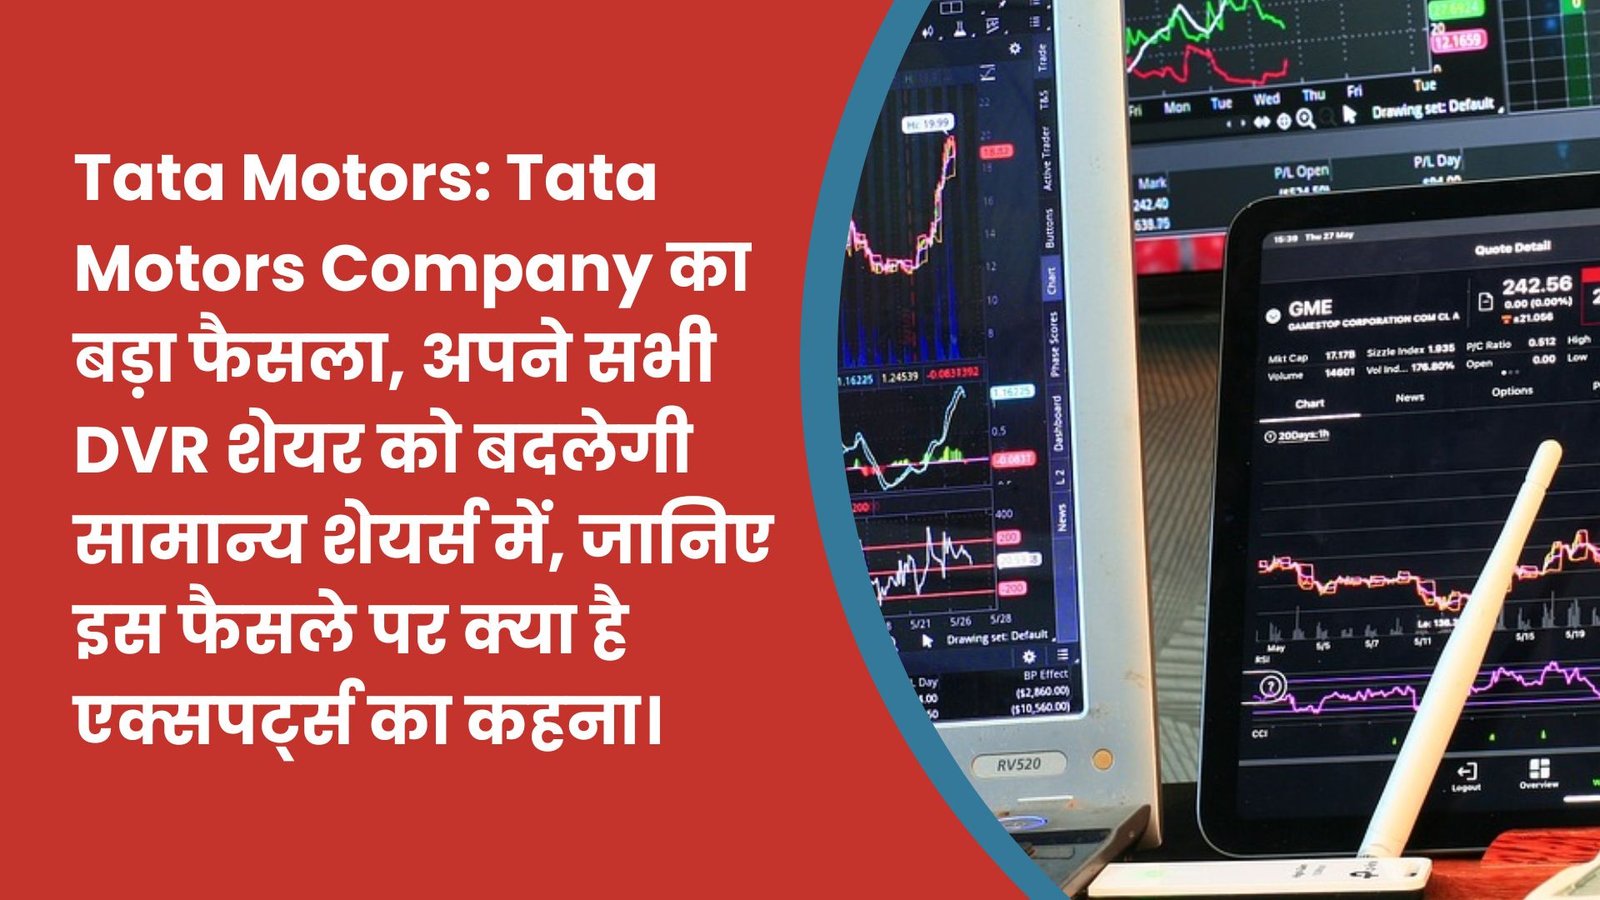 Tata Motors: Tata Motors Company का बड़ा फैसला, अपने सभी DVR शेयर को बदलेगी सामान्य शेयर्स में, जानिए इस फैसले पर क्या है एक्सपर्ट्स का कहना।